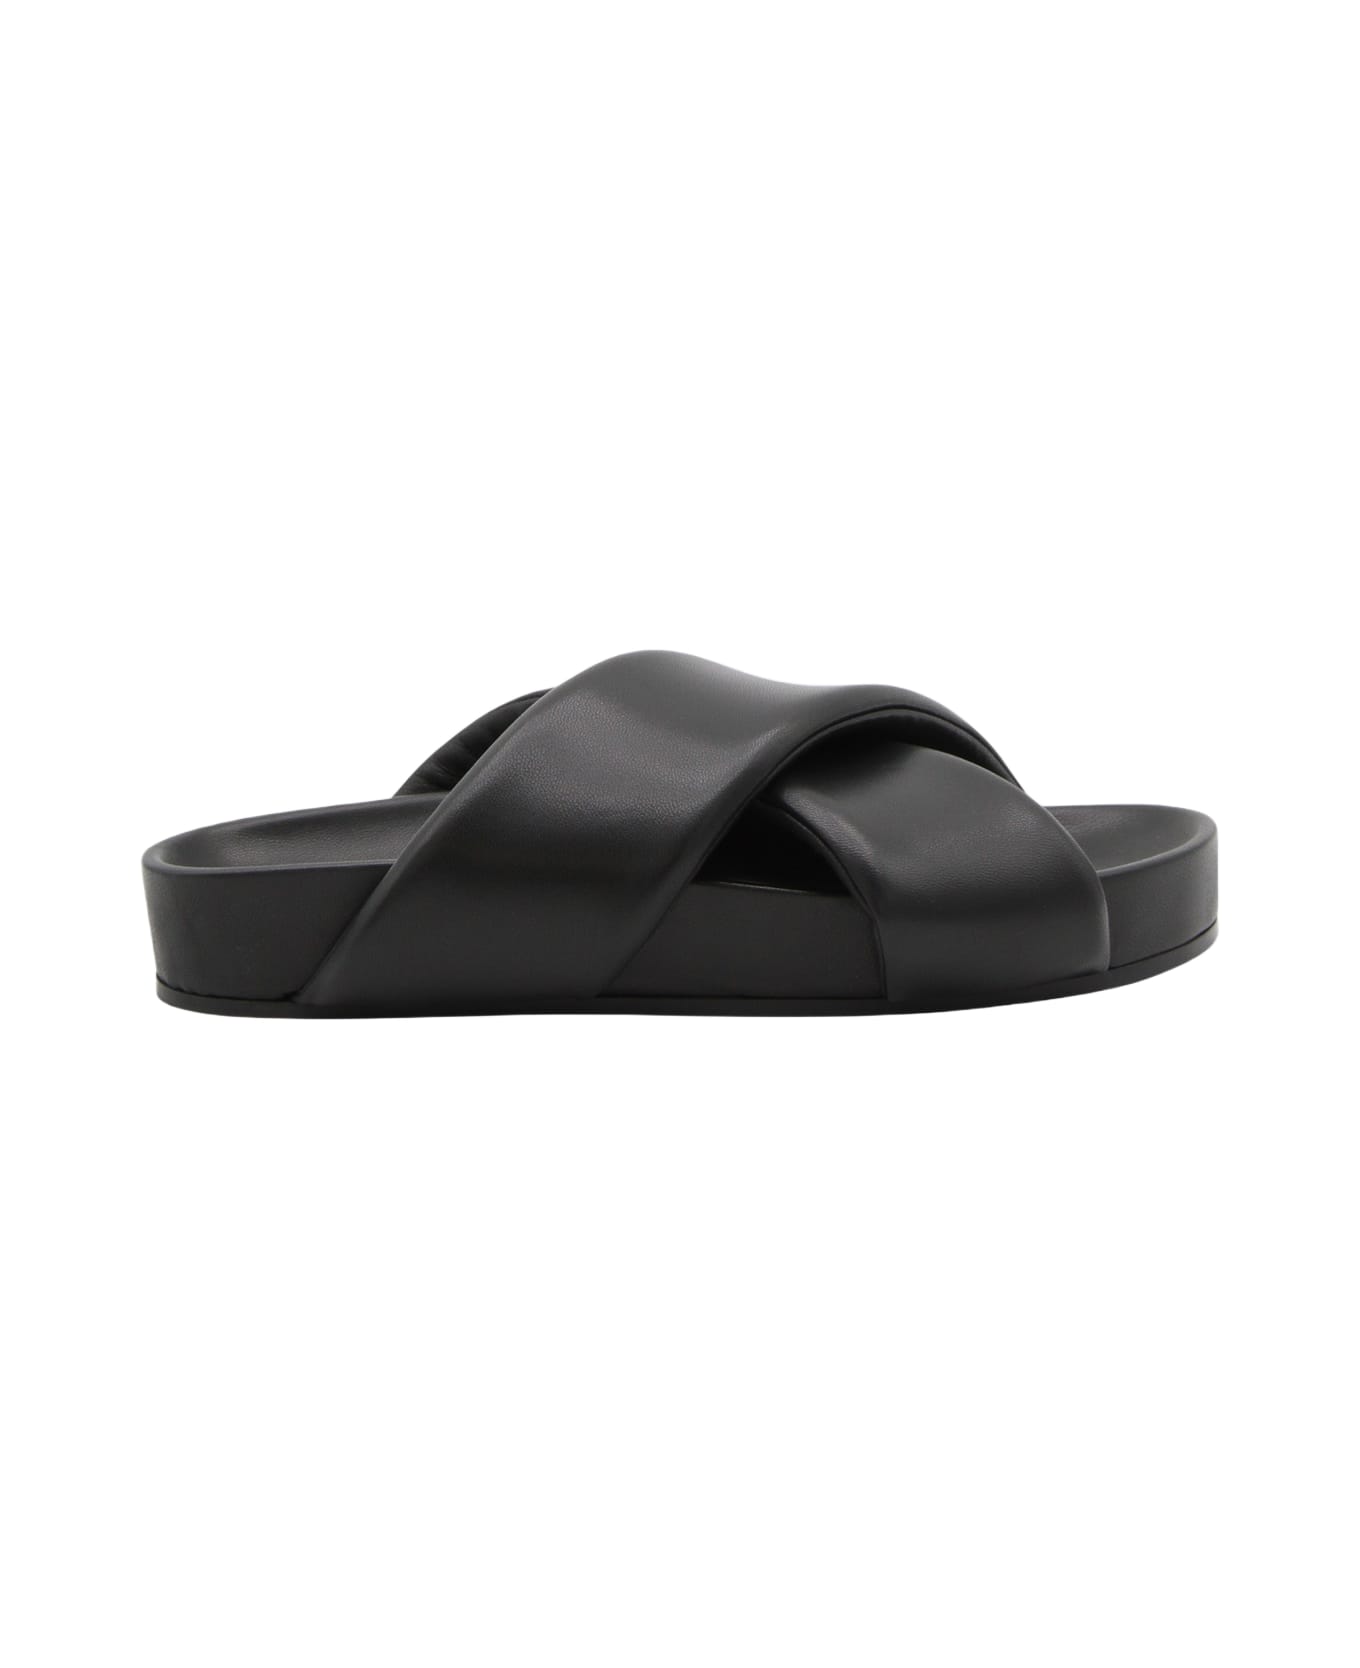 Jil Sander Black Leather Slides - Black その他各種シューズ